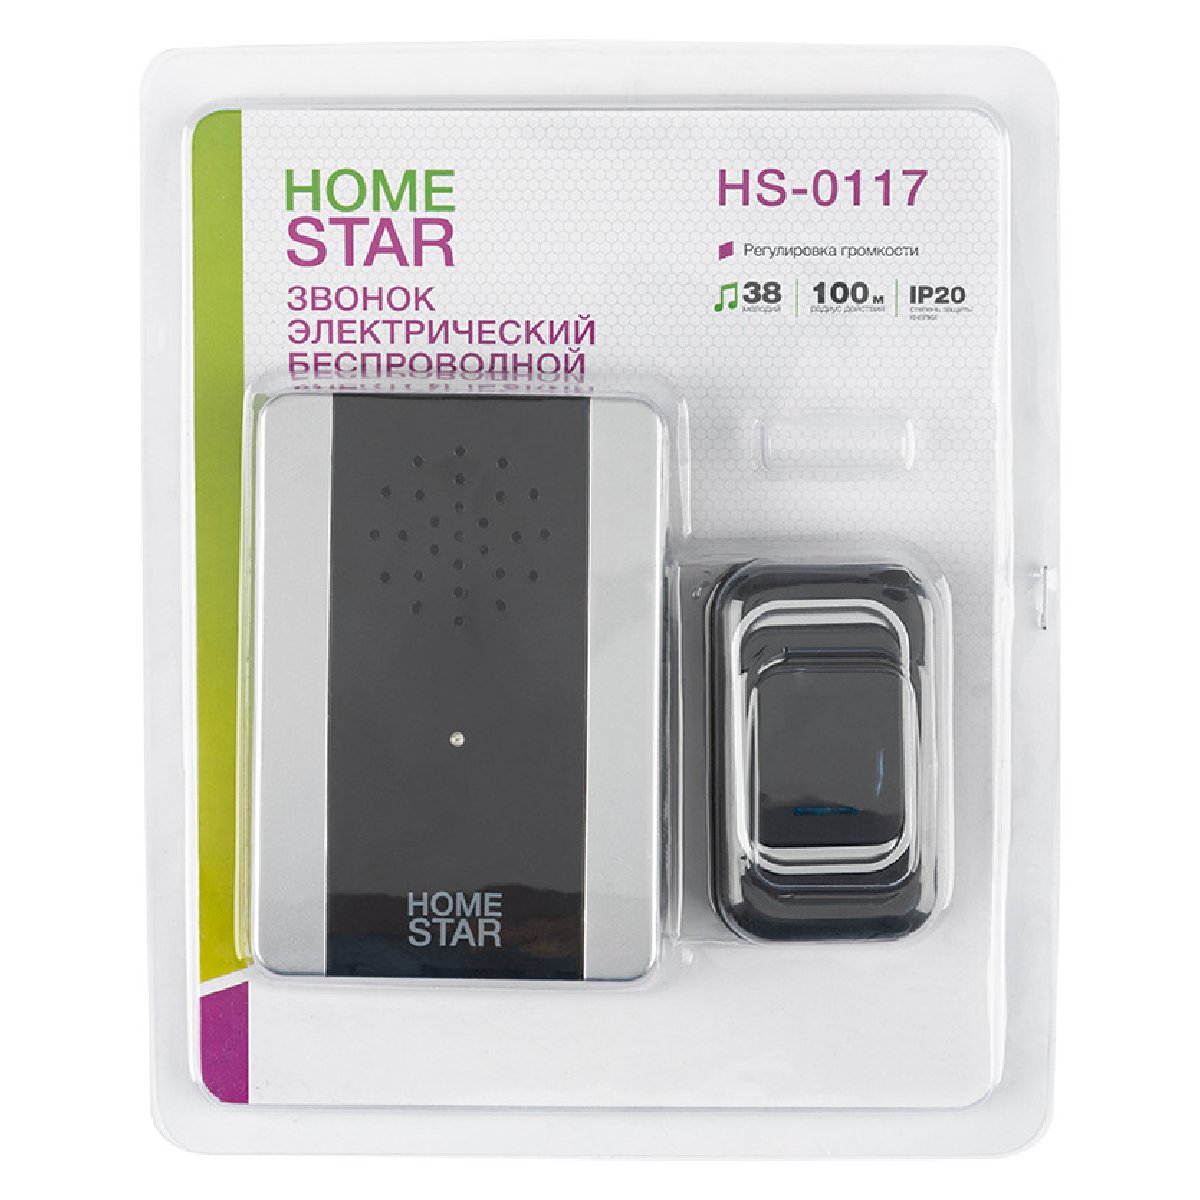 Звонок электрический HomeStar HS-0117 беспроводной (105592)